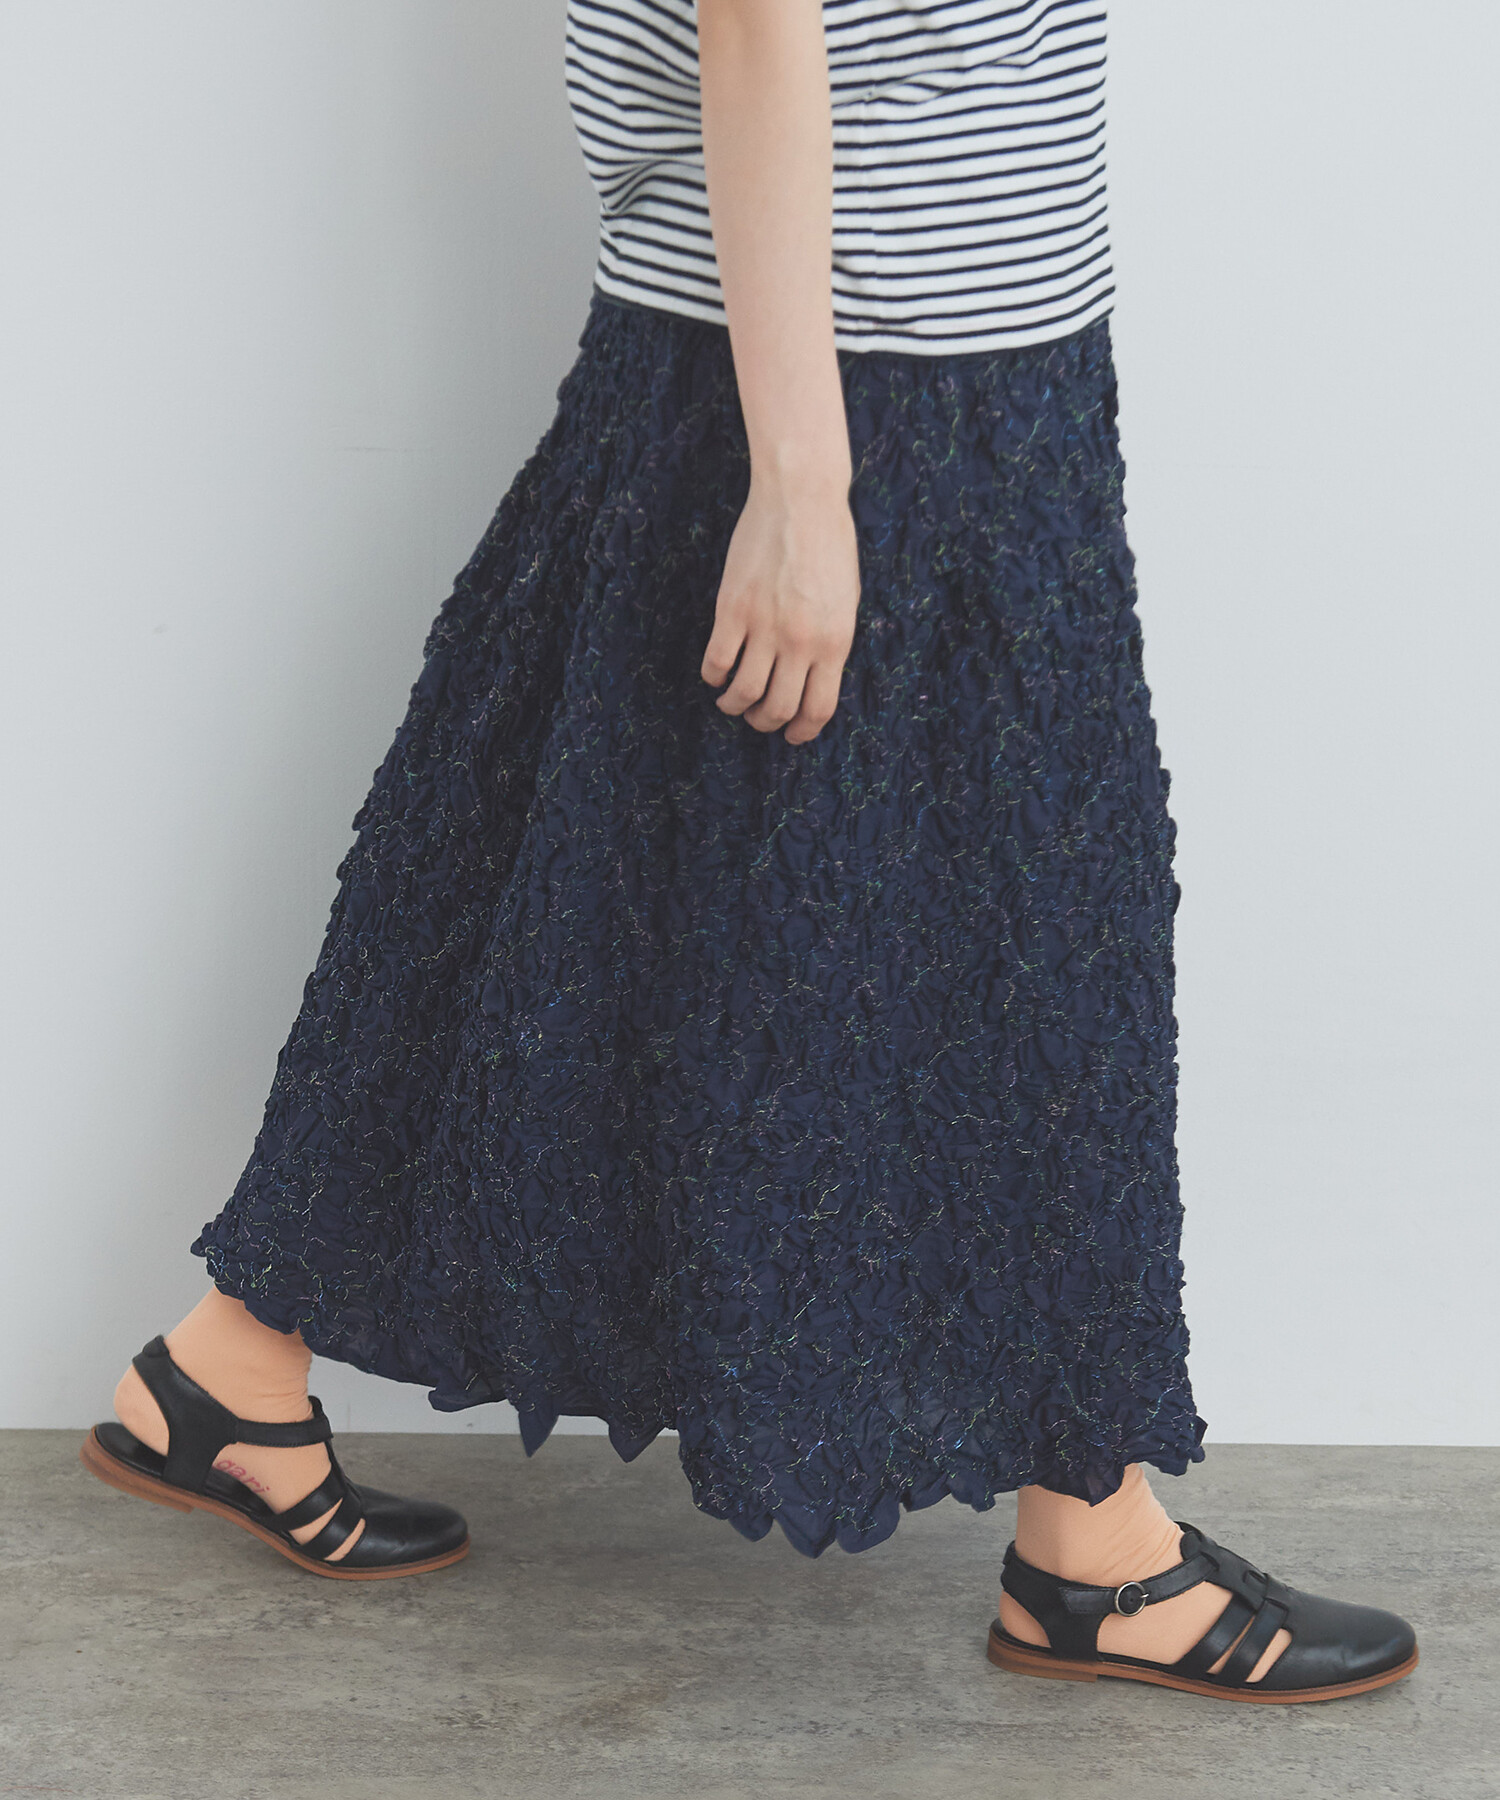 AMBIDEX Store 【予約販売】○くしゅくしゅはな刺繍 スカート(F コン 